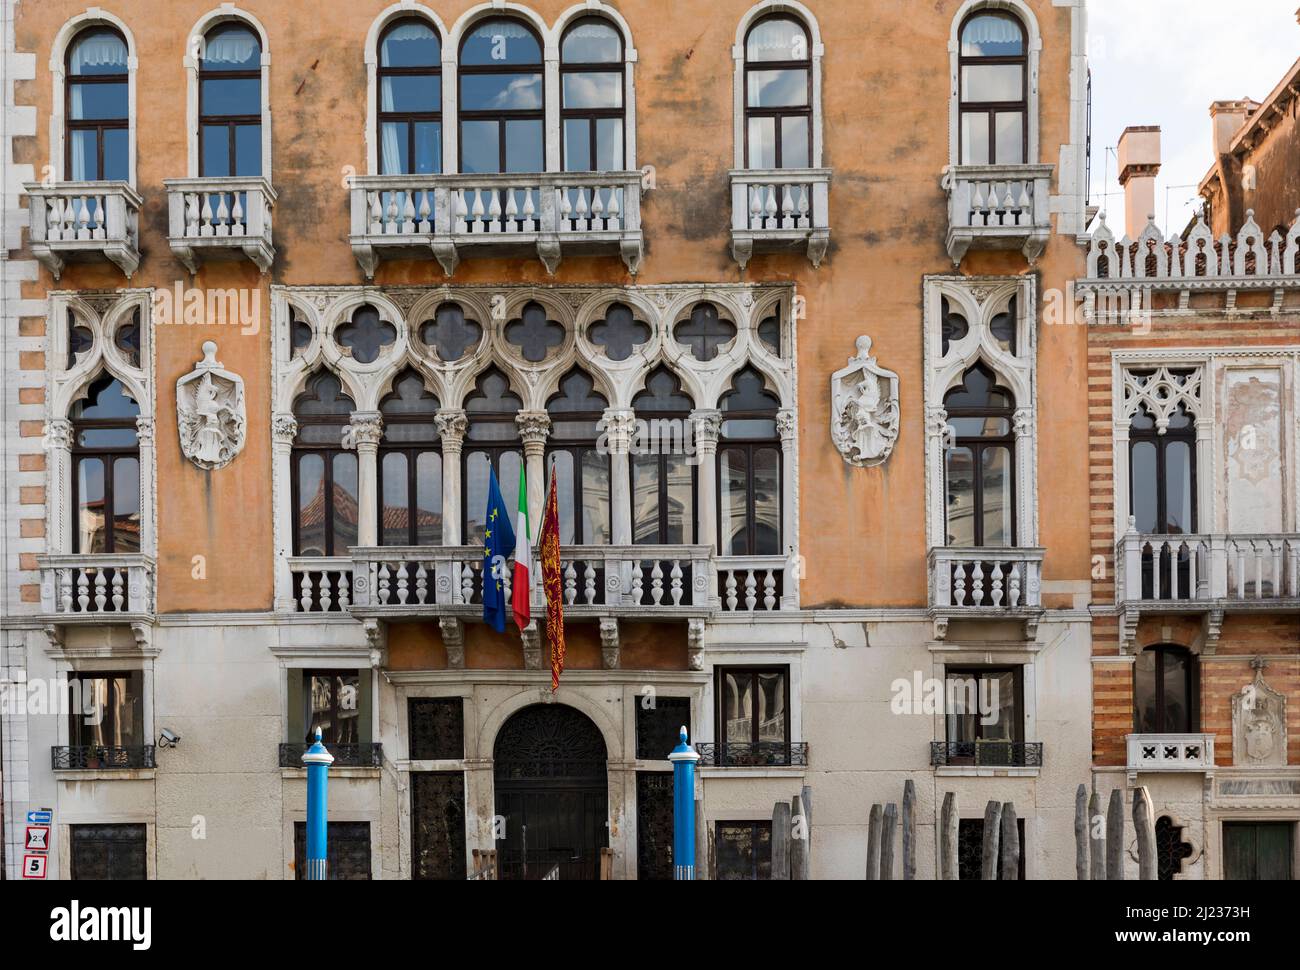 Italia, Venezia, Palazzo cavalli-Franchetti in stile gotico veneziano sul Canal Grande Foto Stock